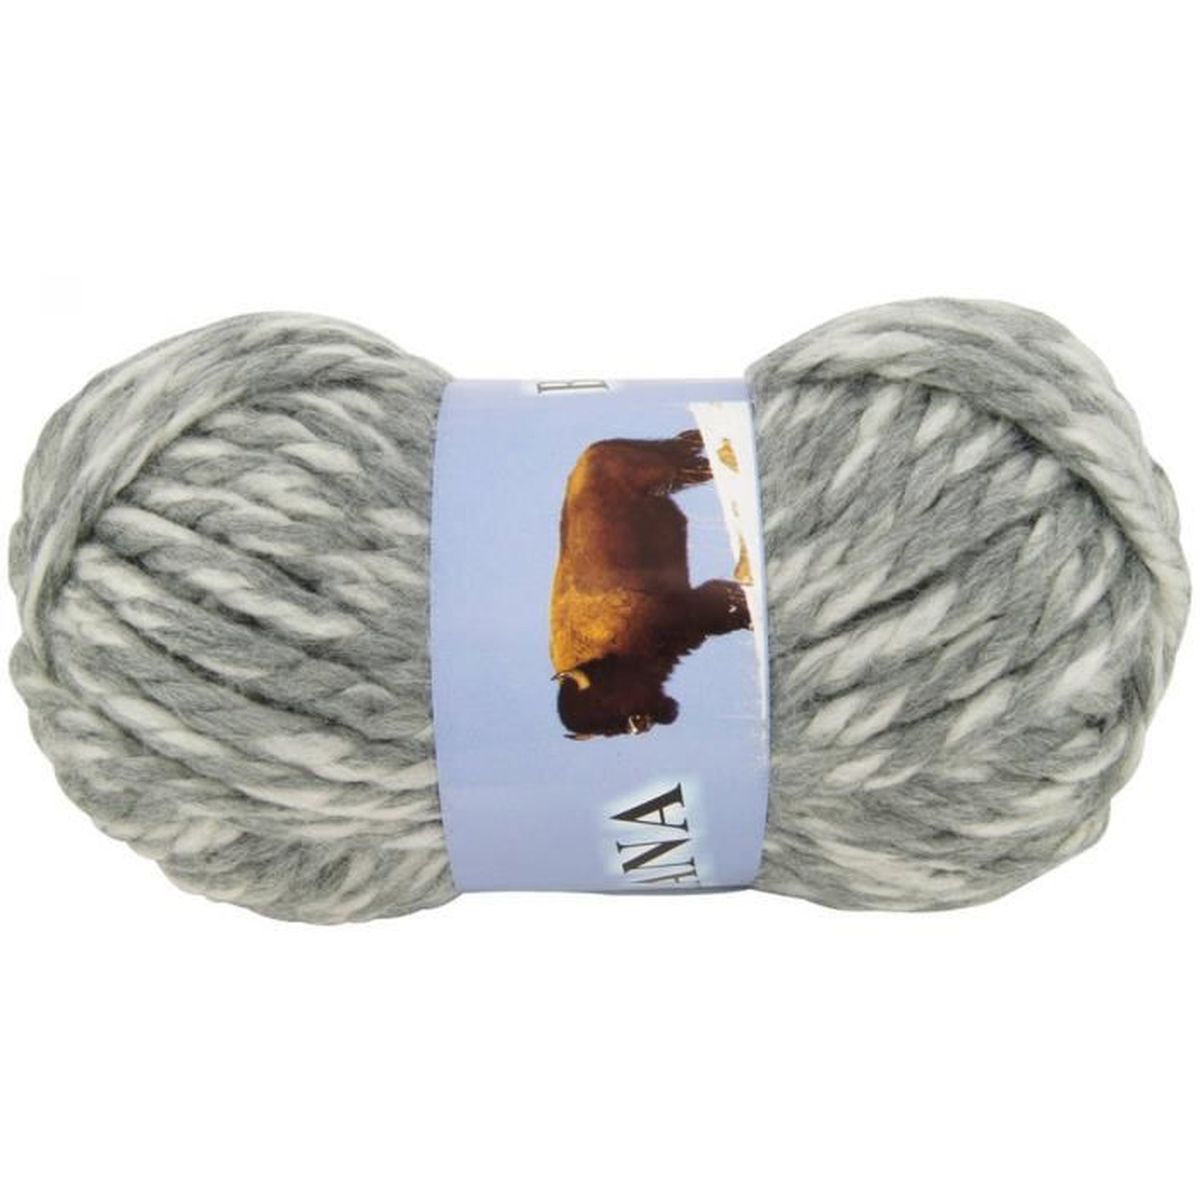 Pelote de laine a tricoter aiguille 12 - Achat / Vente Pelote de laine